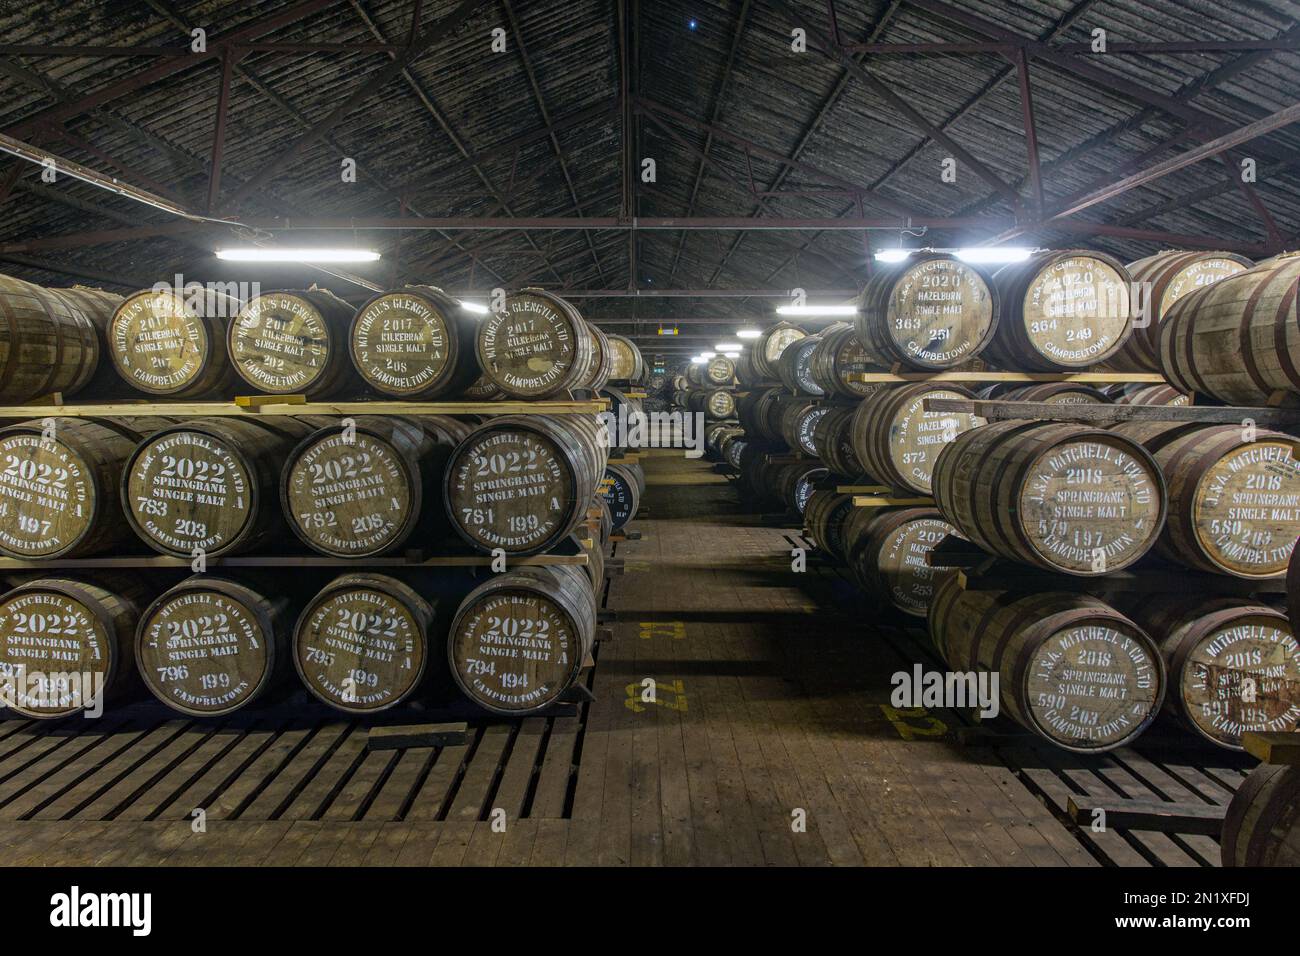 Almacén de destilería Springbank lleno de barricas de whisky maduras, Campbeltown, Argyll y Bute, Escocia, Reino Unido Foto de stock